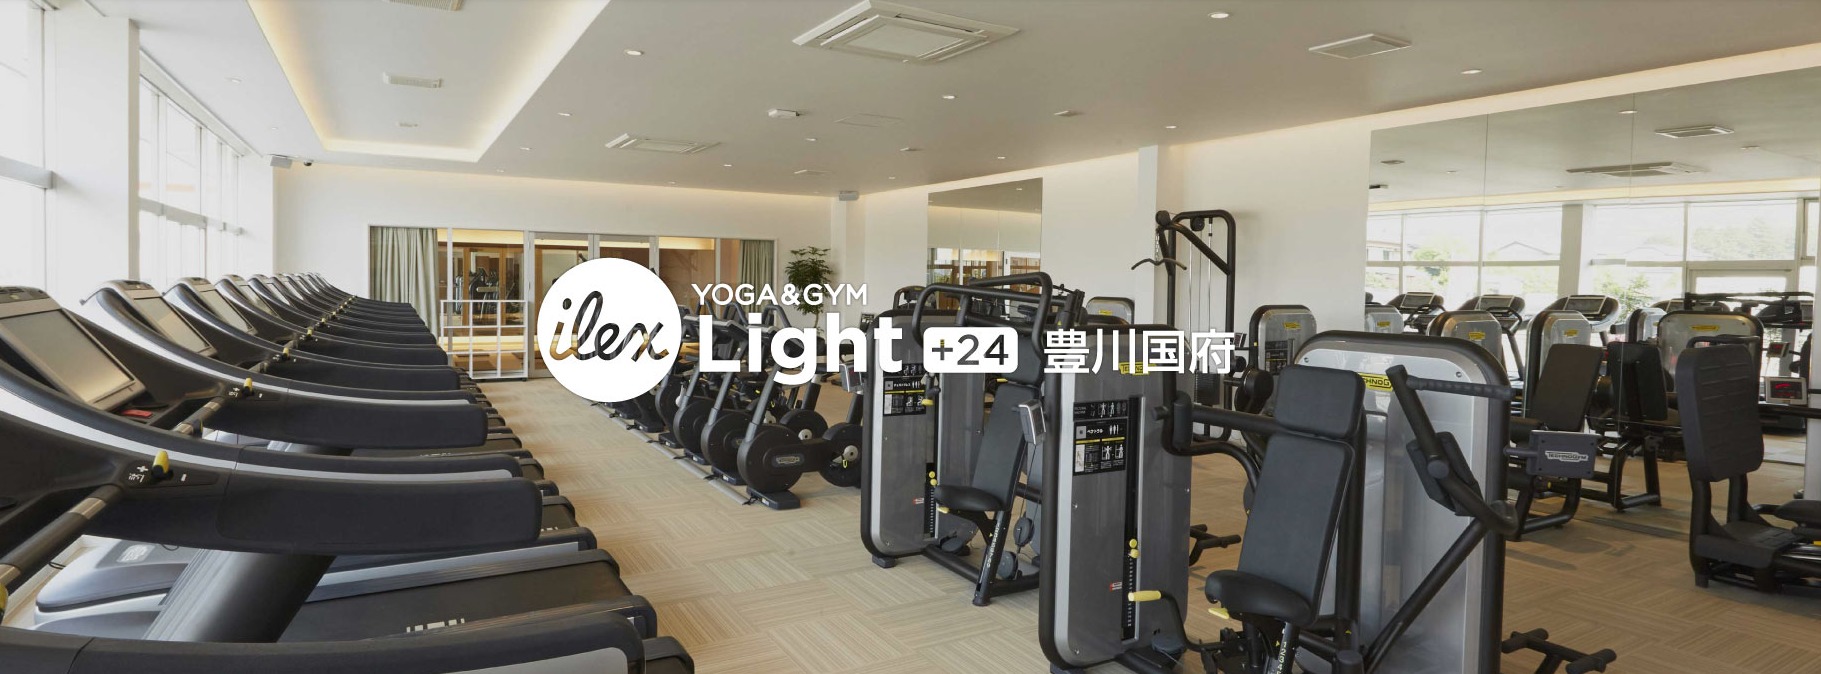 アイレクス・ライト+24豊川国府の施設画像